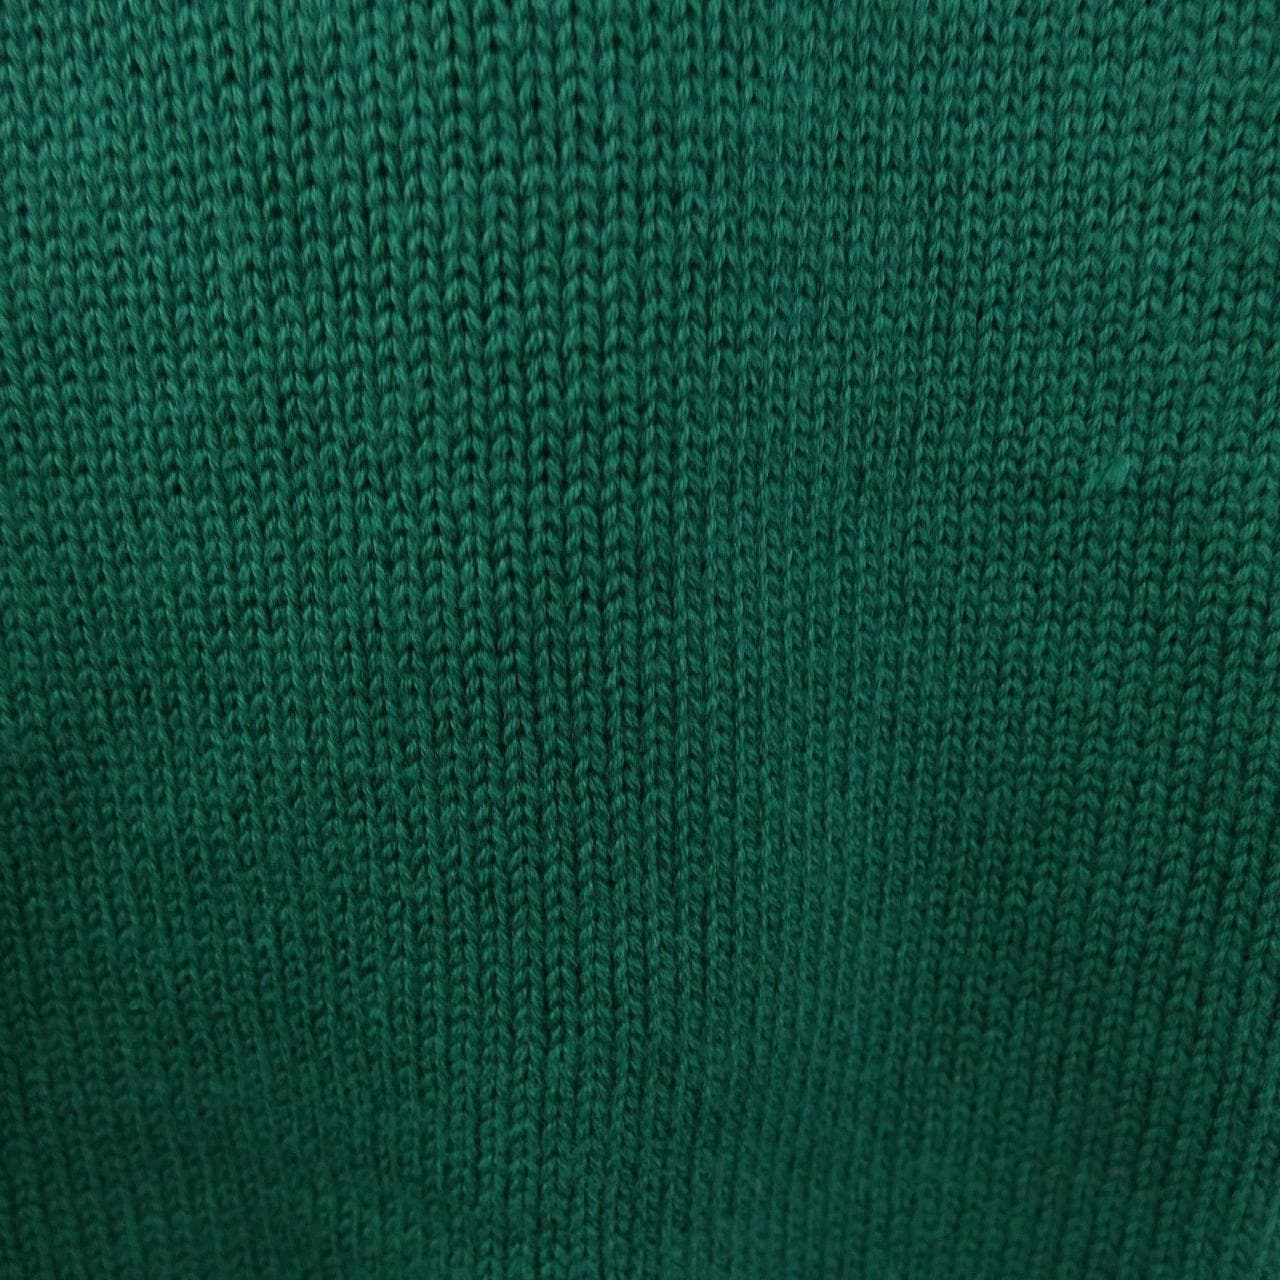 PANIC knit